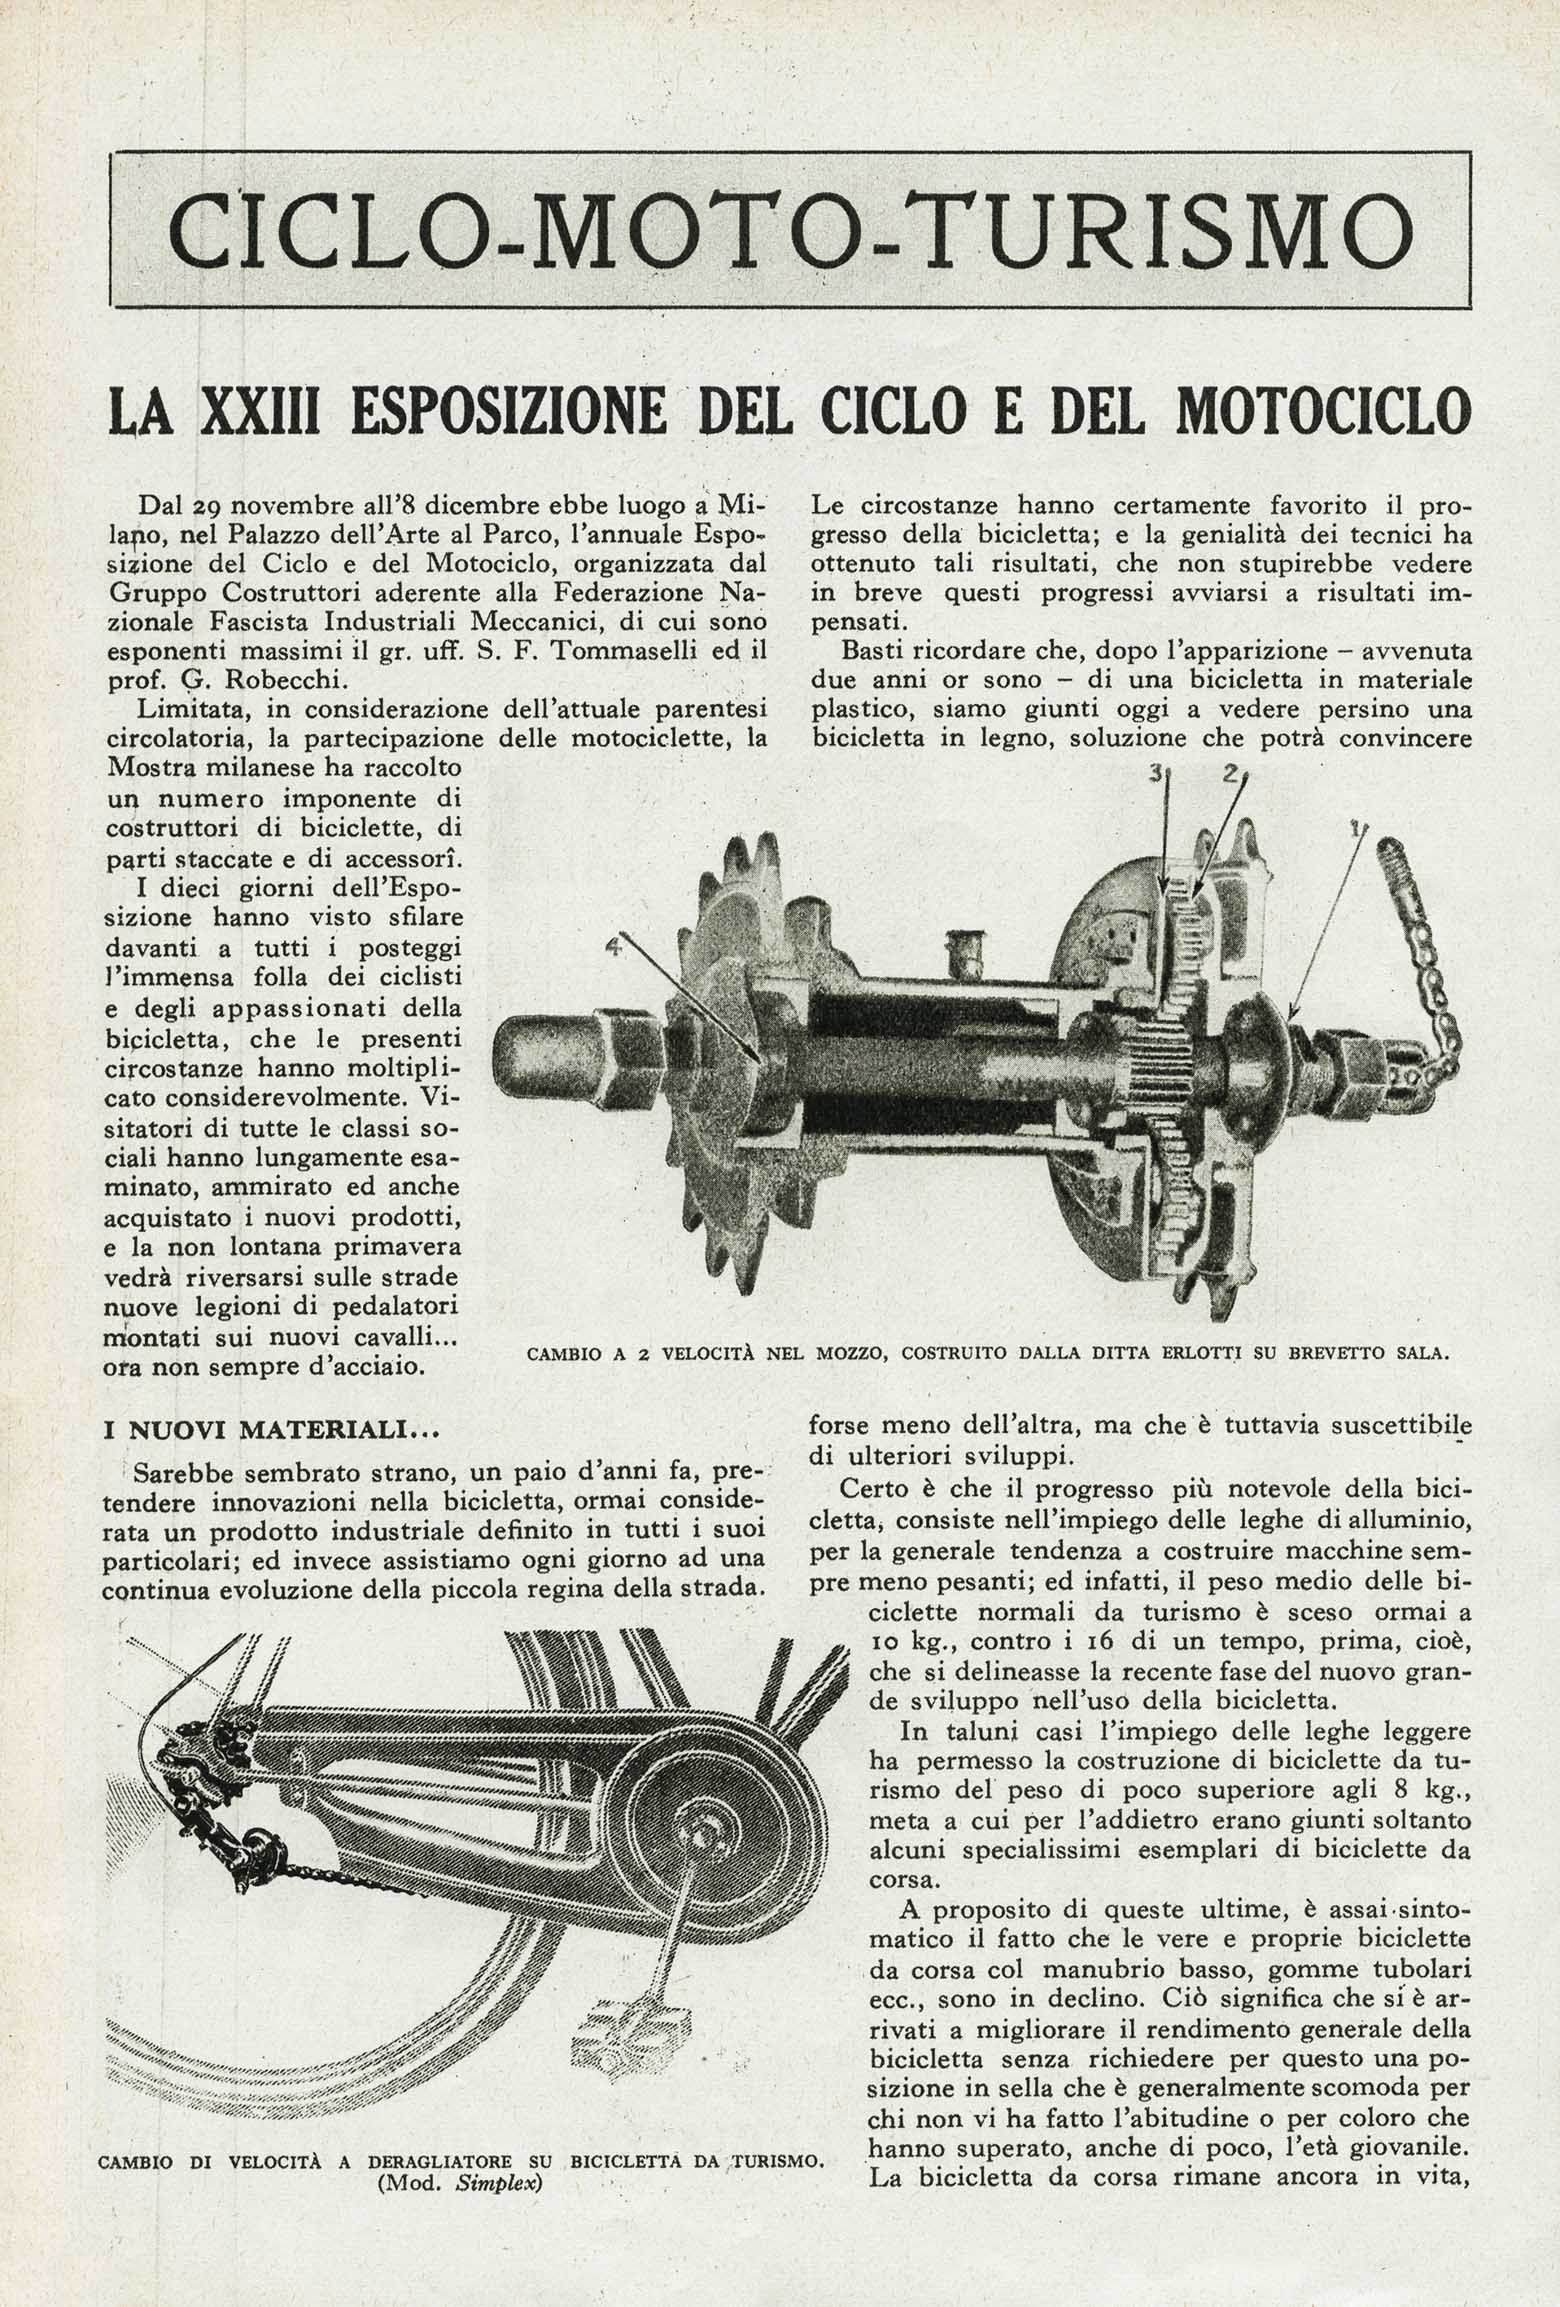 Le Vie d'Italia January 1942 - La XXIII esposizione del ciclo e del motociclo scan 01 main image